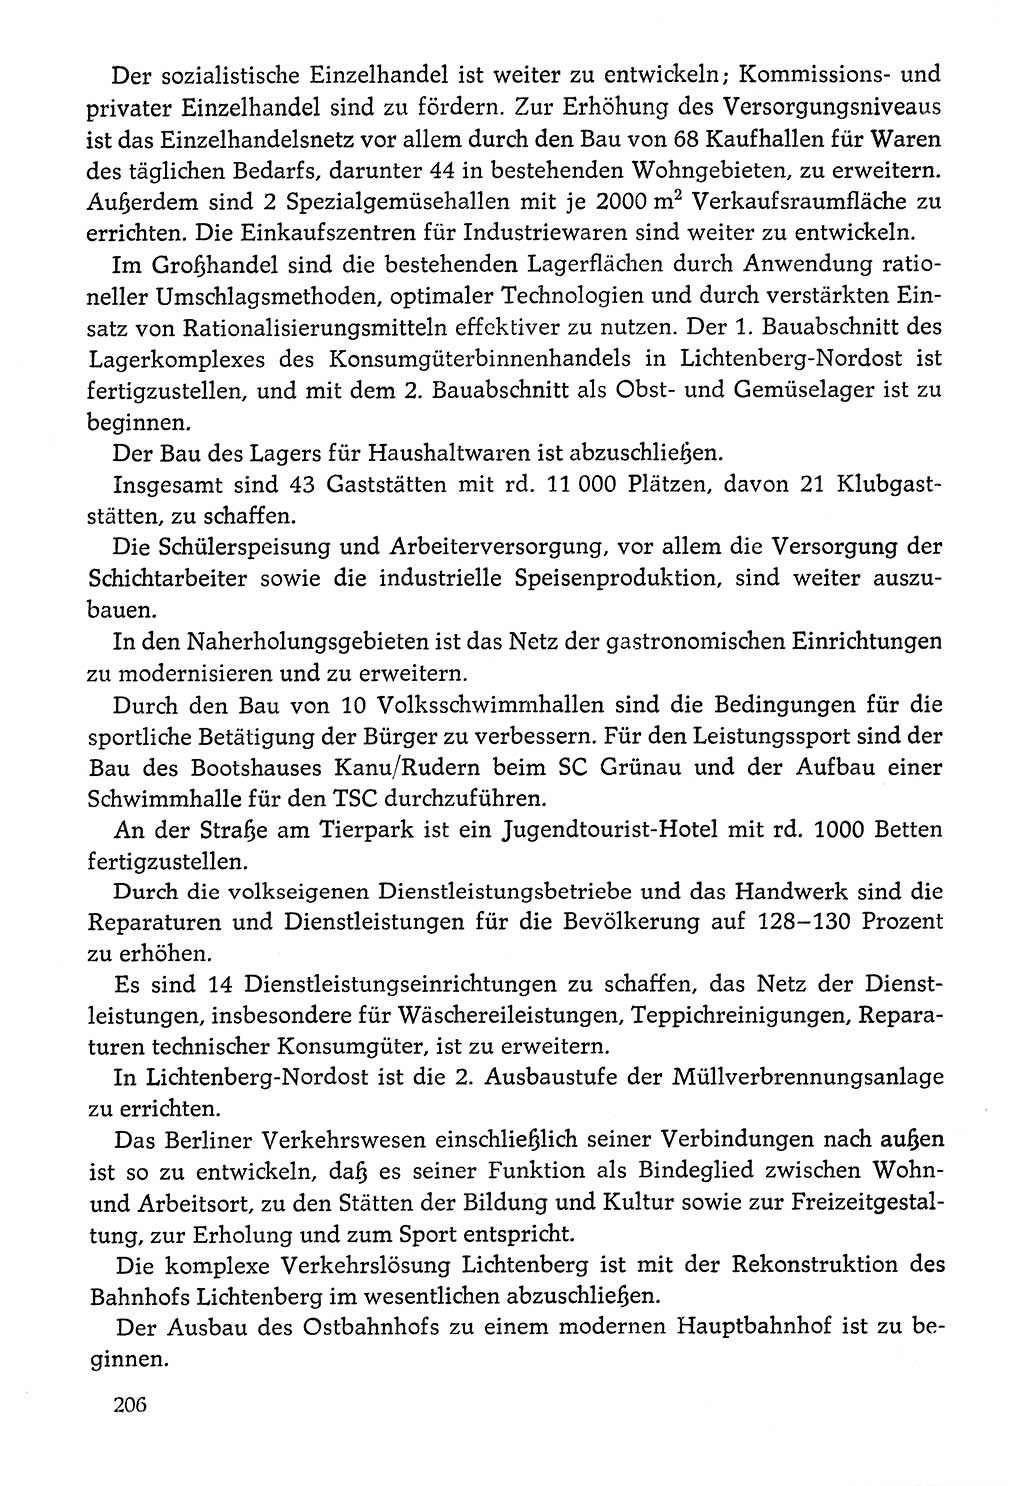 Dokumente der Sozialistischen Einheitspartei Deutschlands (SED) [Deutsche Demokratische Republik (DDR)] 1976-1977, Seite 206 (Dok. SED DDR 1976-1977, S. 206)